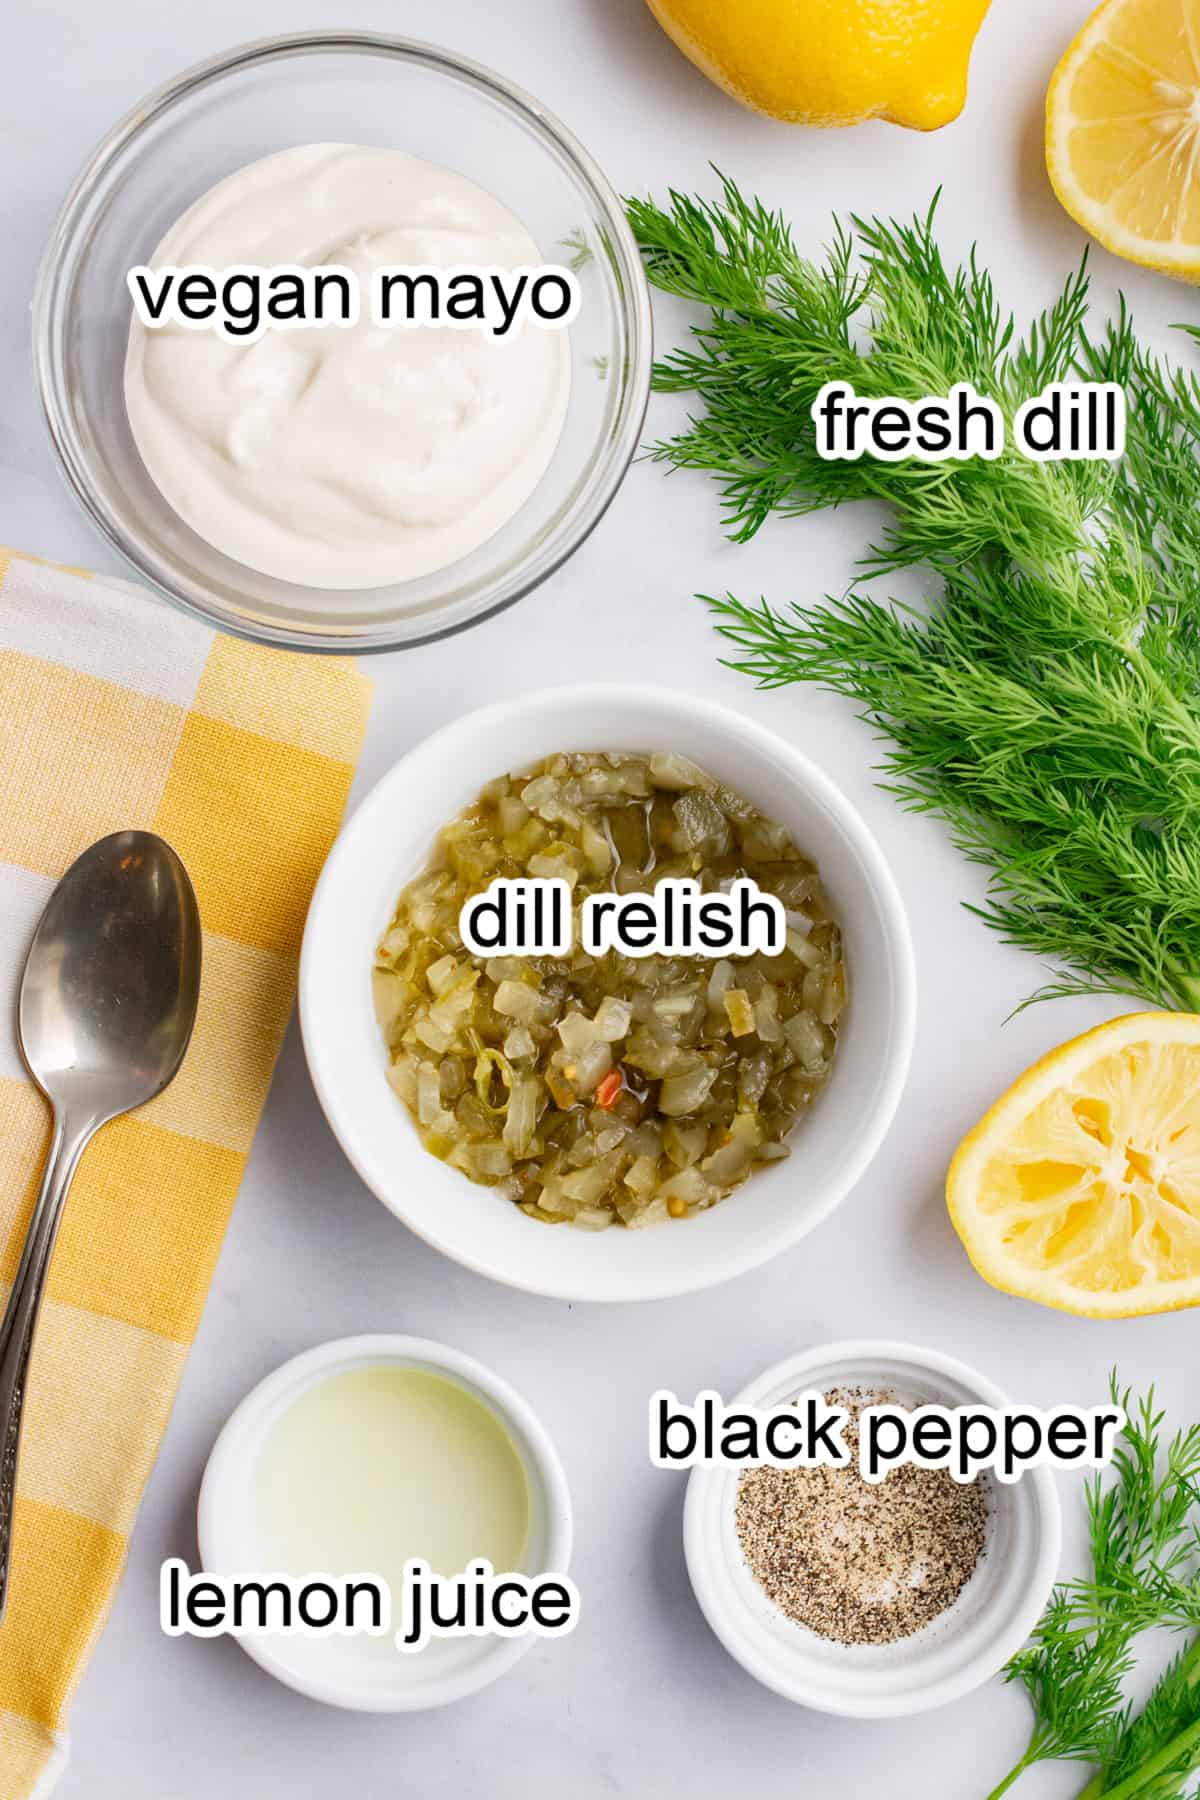 ingredients in bowls.